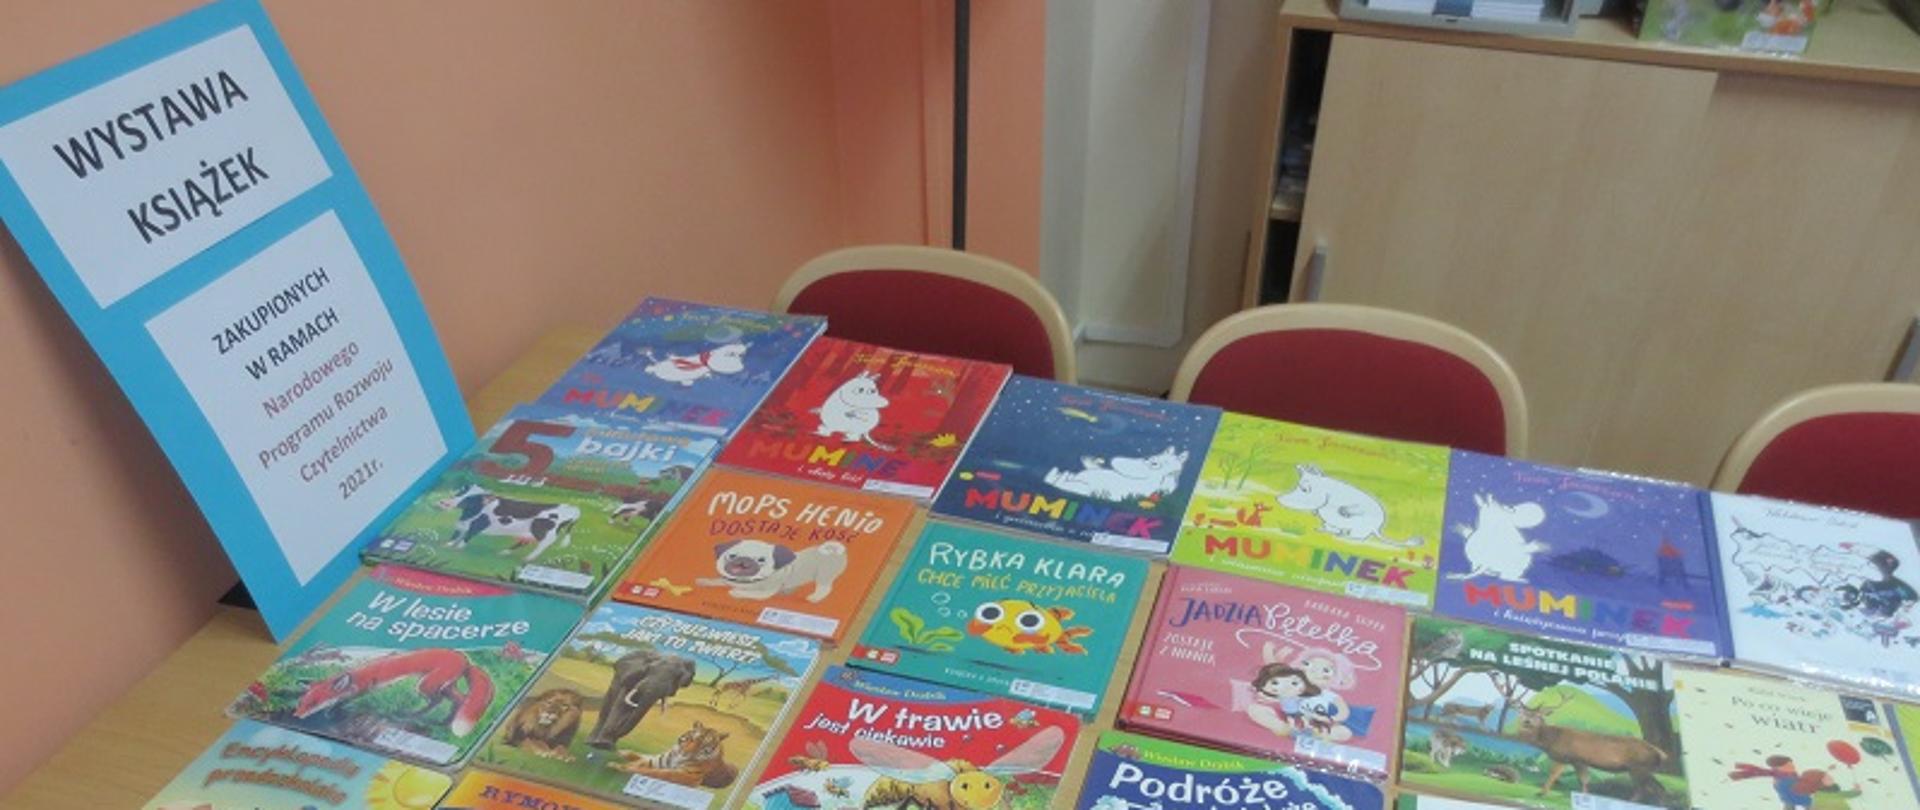 Zdjęcie przedstawia książki dla dzieci ułożone na ławce. Z lewej strony plakat z napisem wystawa książek